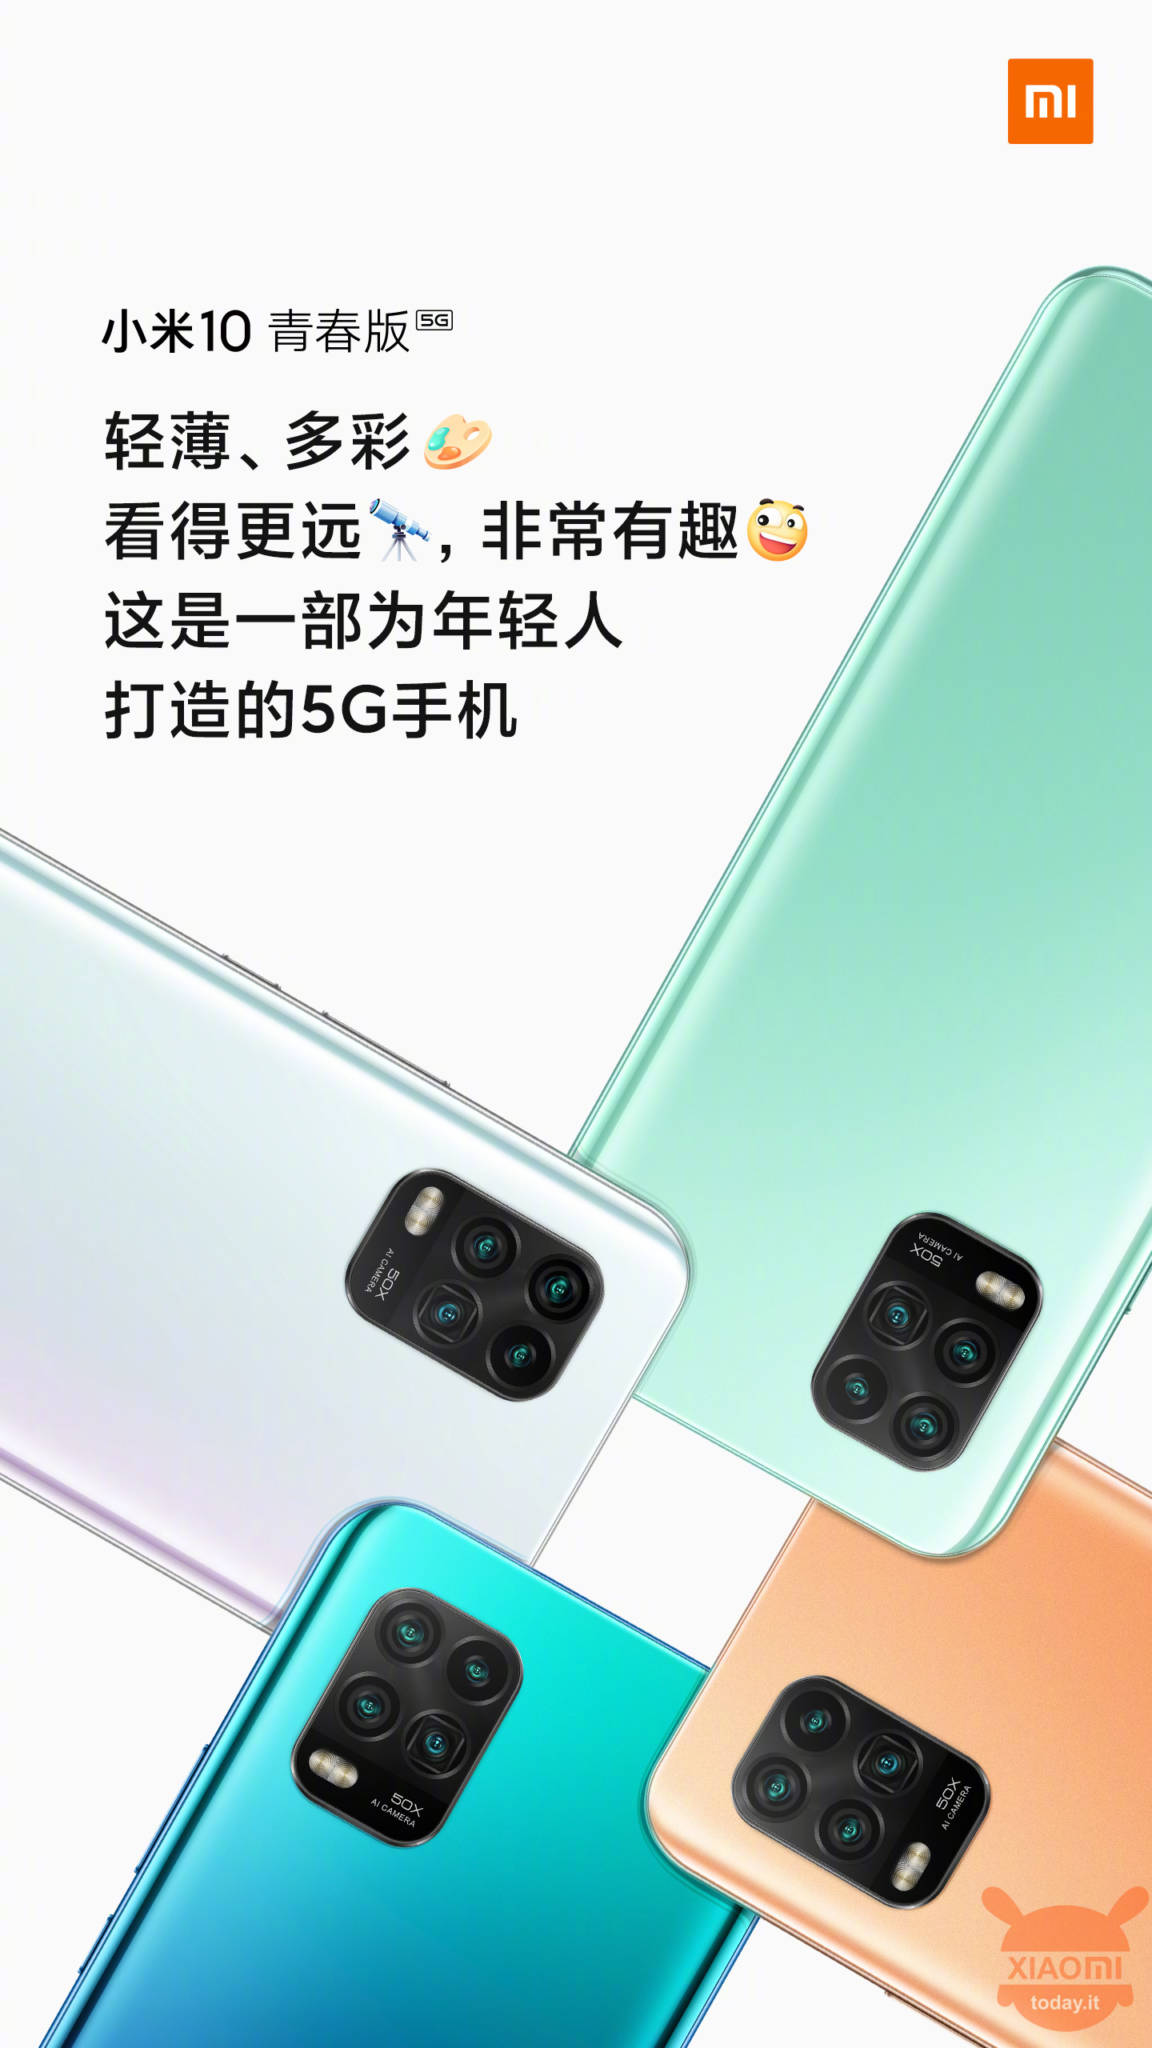 Xiaomi Mi 10 Youth Edition in arrivo con super zoom 50X